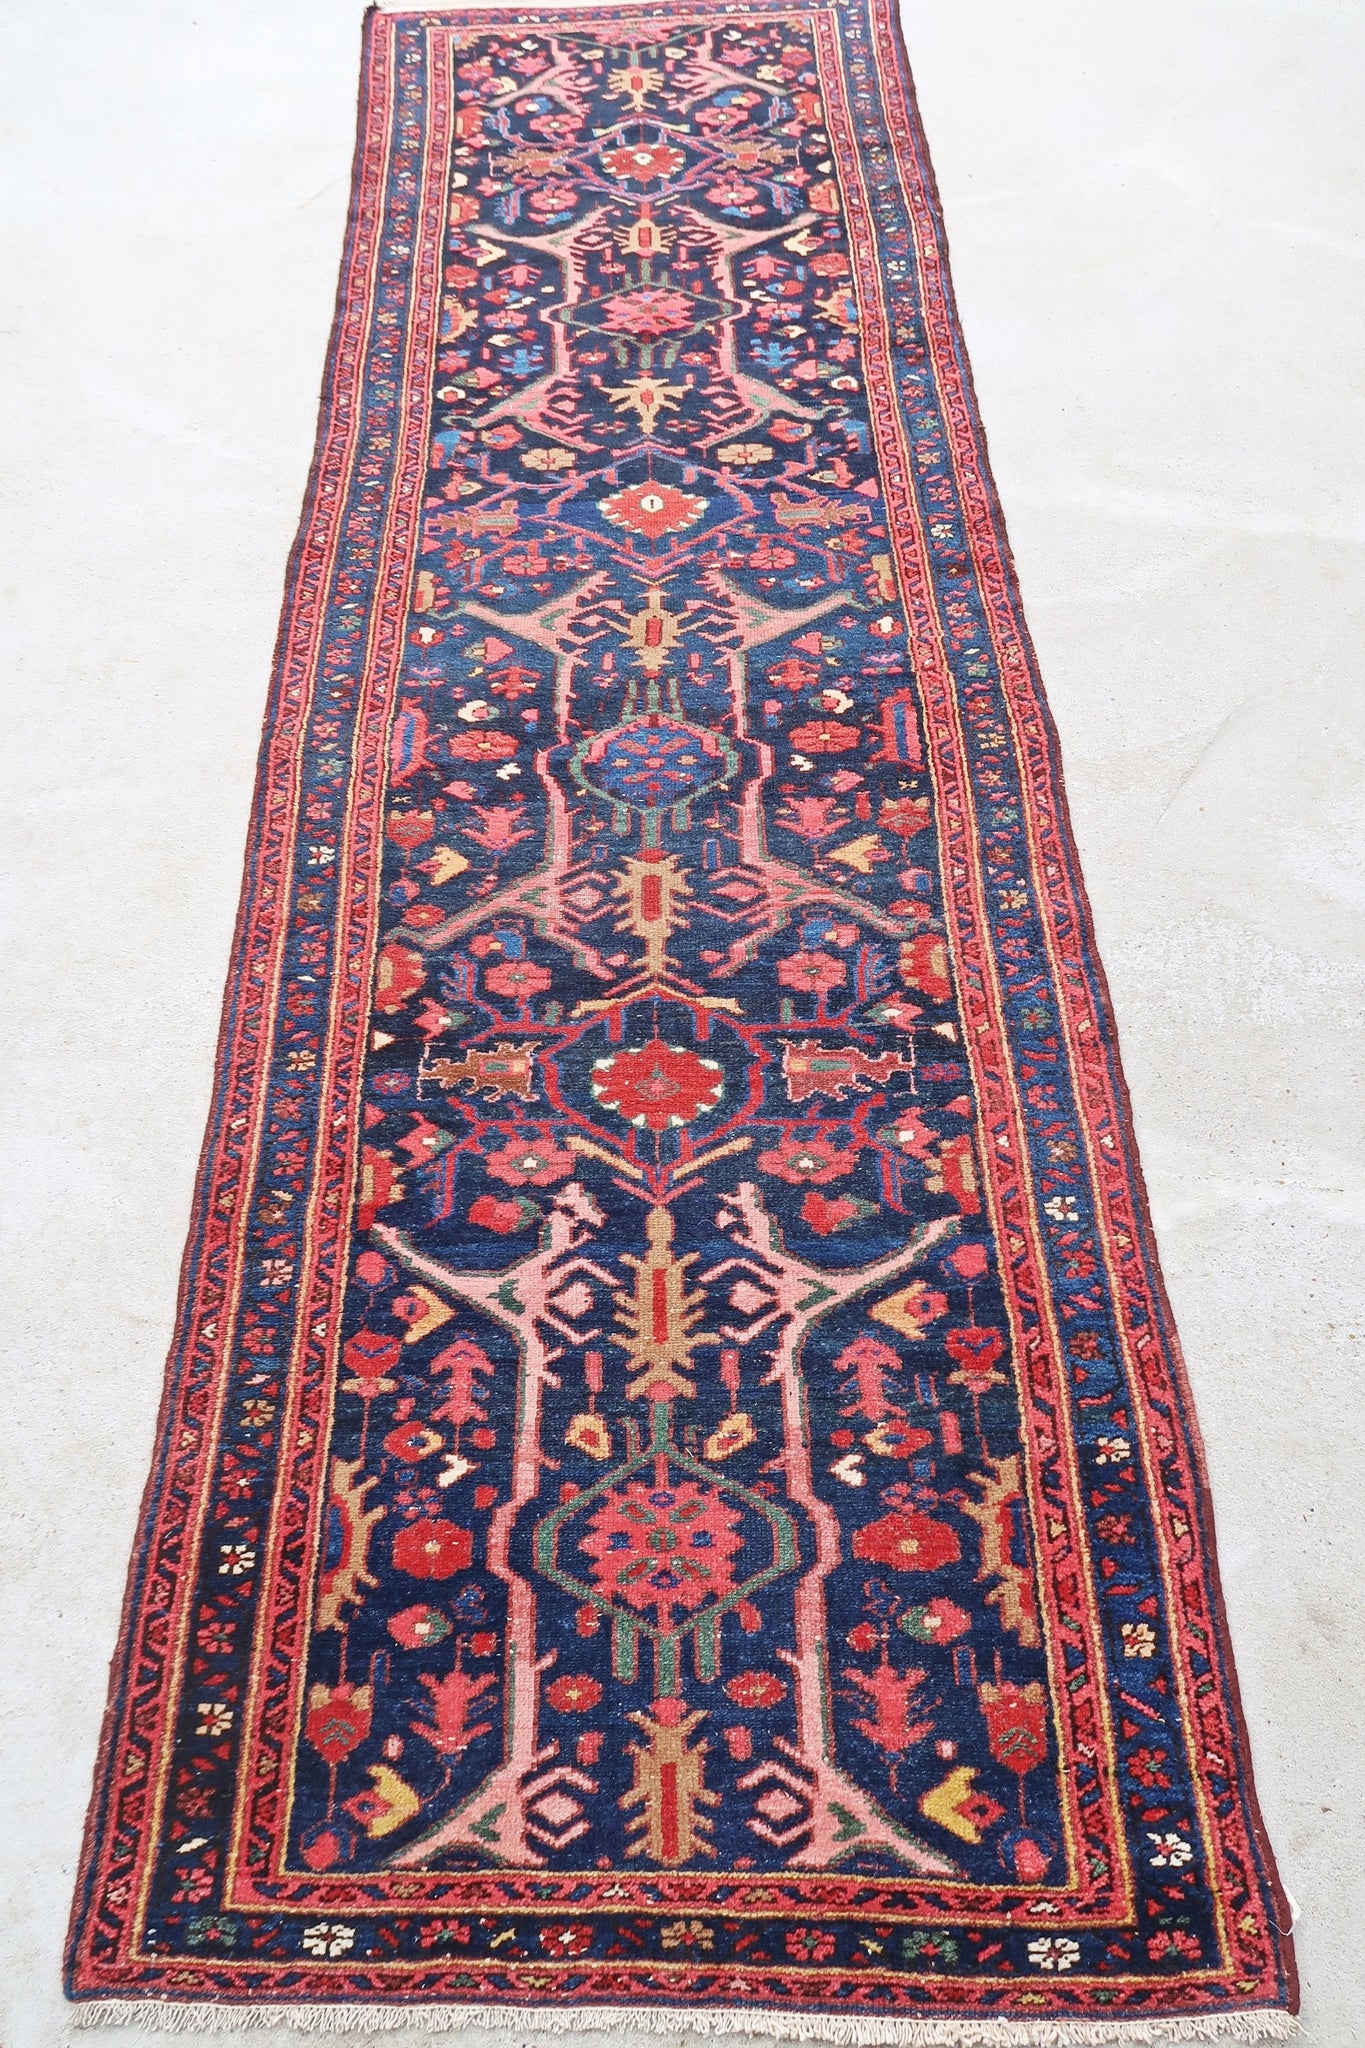 Persian rug Hamadan 